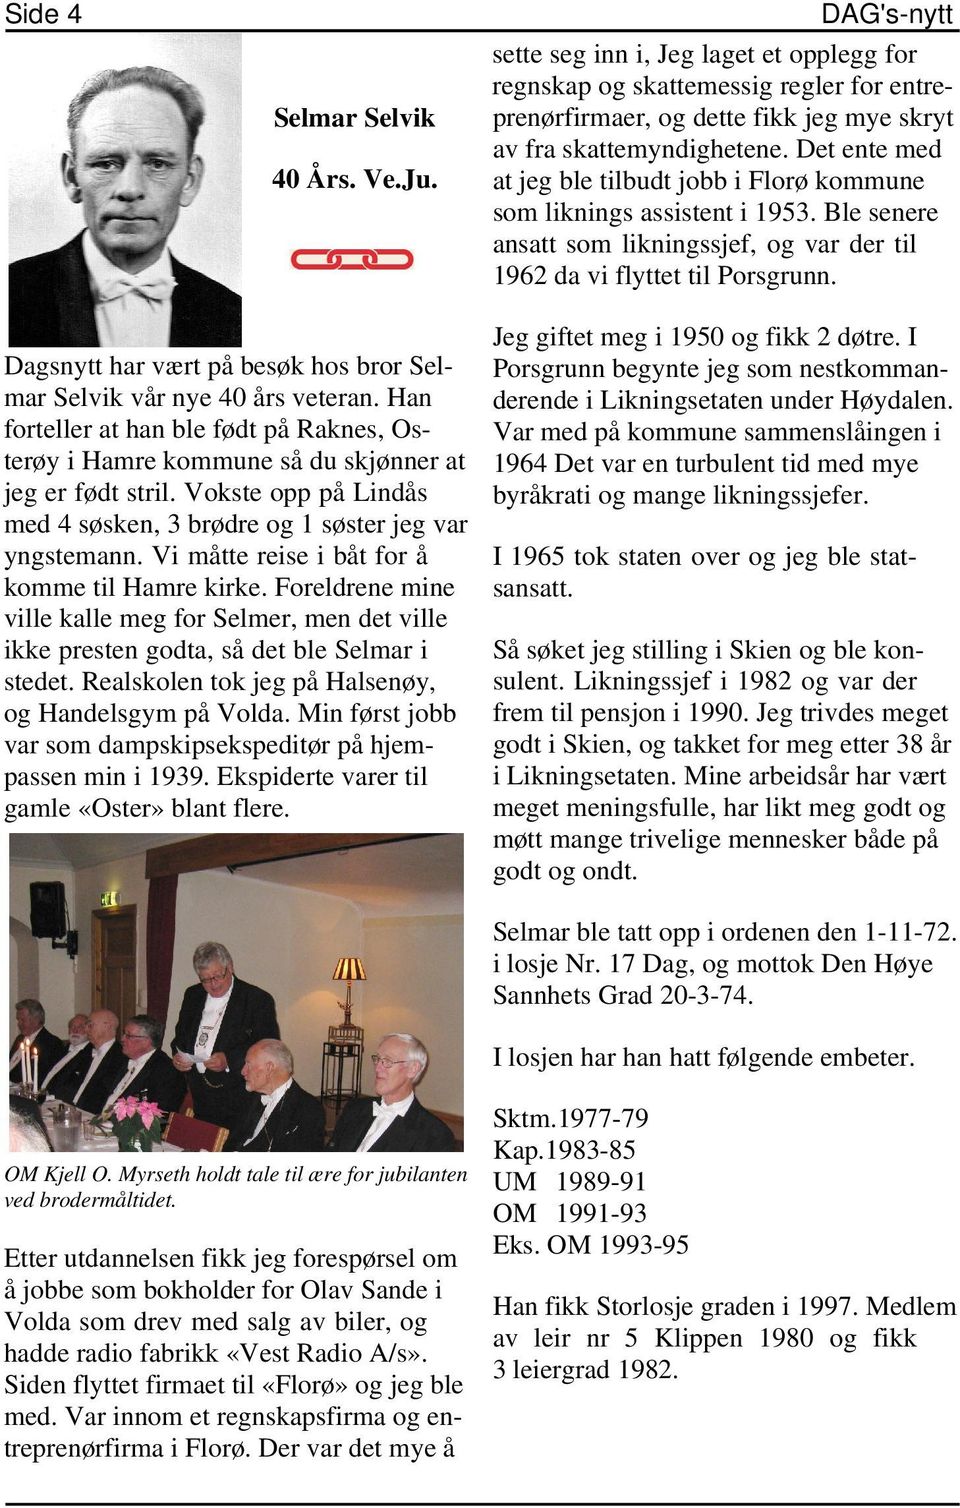 Dagsnytt har vært på besøk hos bror Selmar Selvik vår nye 40 års veteran. Han forteller at han ble født på Raknes, Osterøy i Hamre kommune så du skjønner at jeg er født stril.